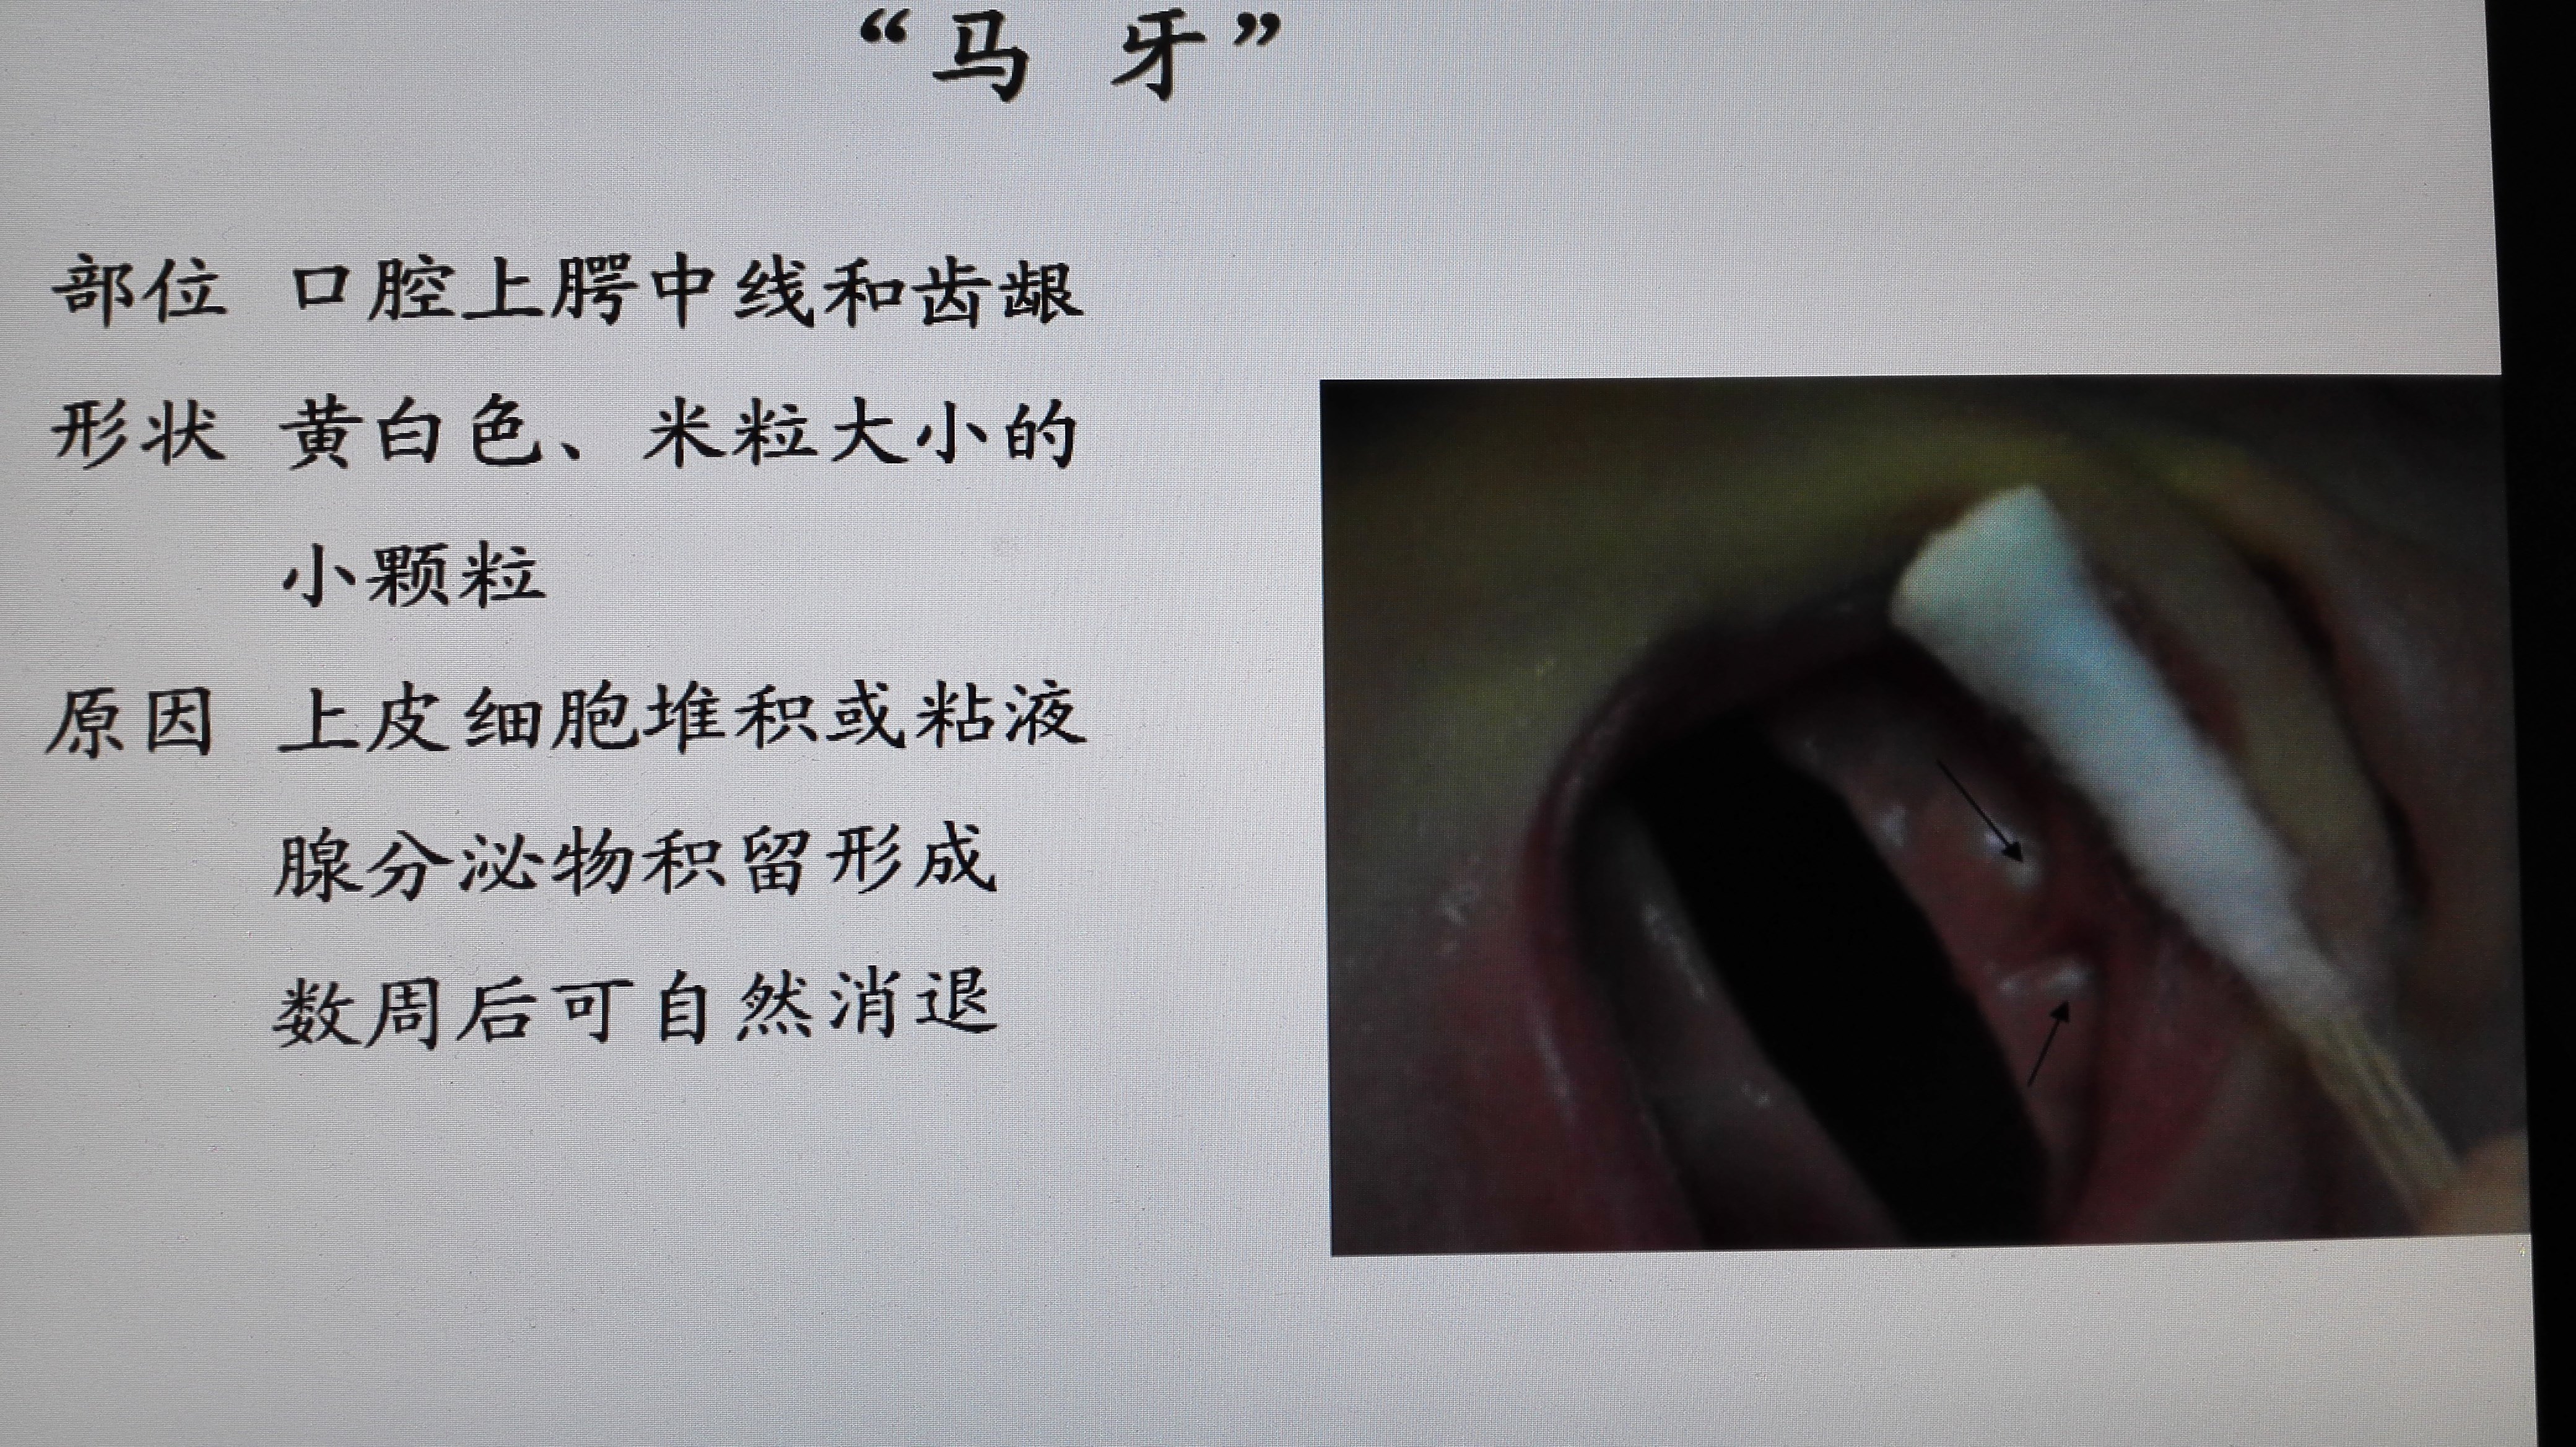 马牙口腔图片